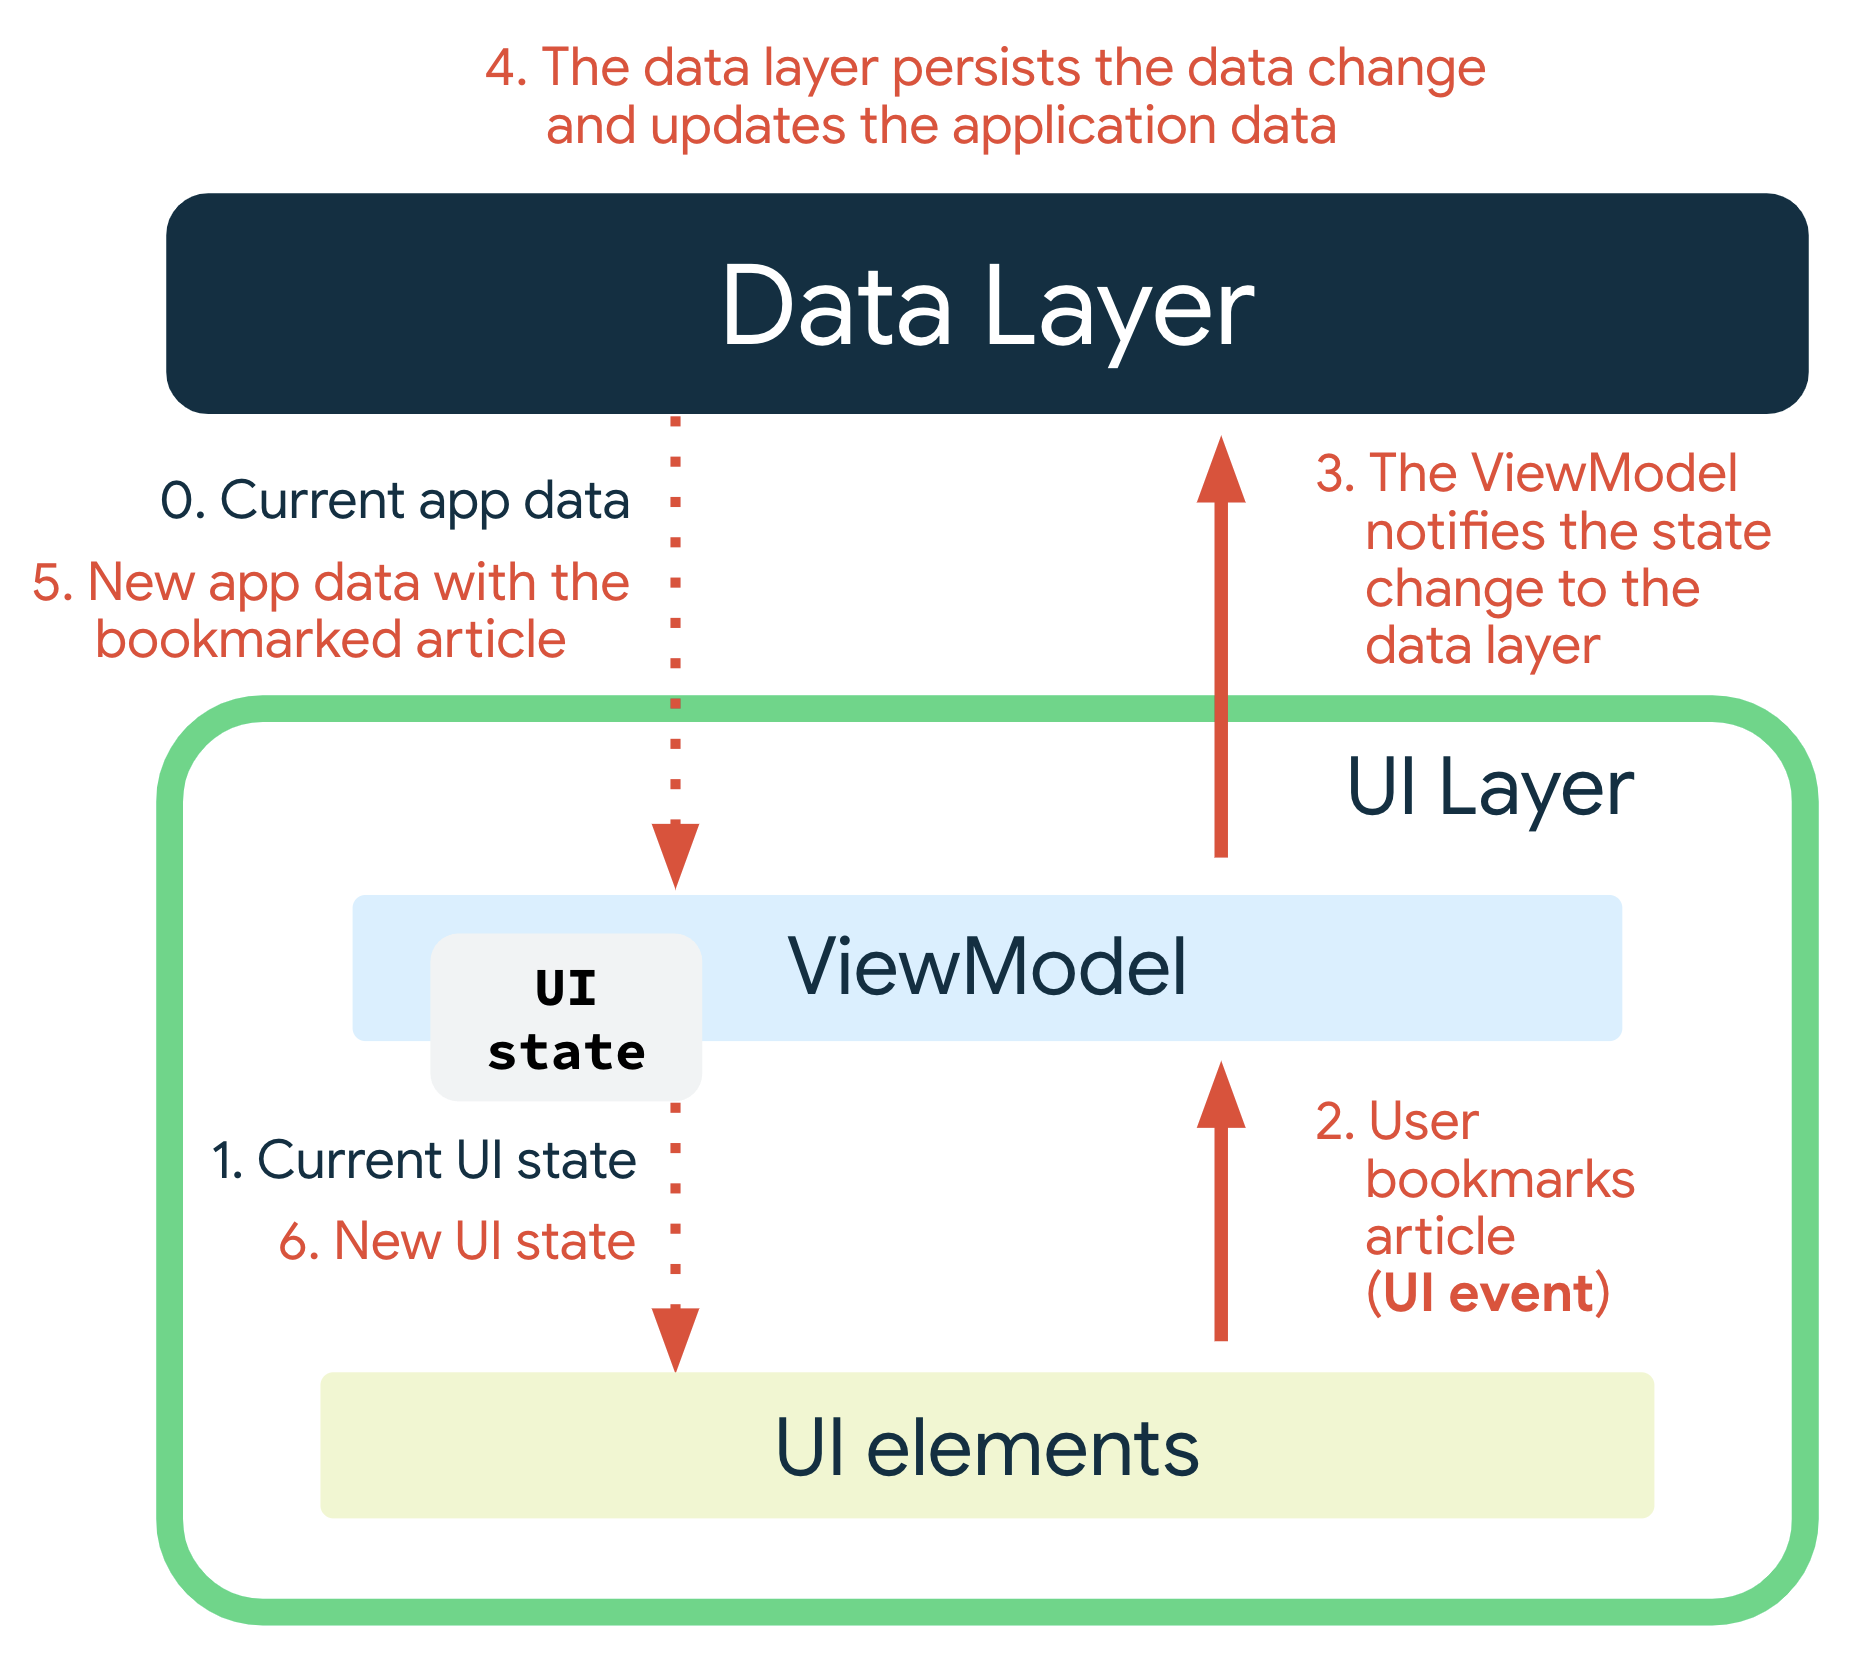 사용자가 기사를 북마크할 때 UI 이벤트가 발생합니다. ViewModel이 데이터 레이어에 상태 변경을 알립니다. 데이터 레이어가 데이터 변경사항을 유지하고 애플리케이션 데이터를 업데이트합니다. 북마크된 기사와 함께 새 앱 데이터가 ViewModel에 전달되면 ViewModel이 새 UI 상태를 생성하고 UI 요소에 전달하여 표시합니다.